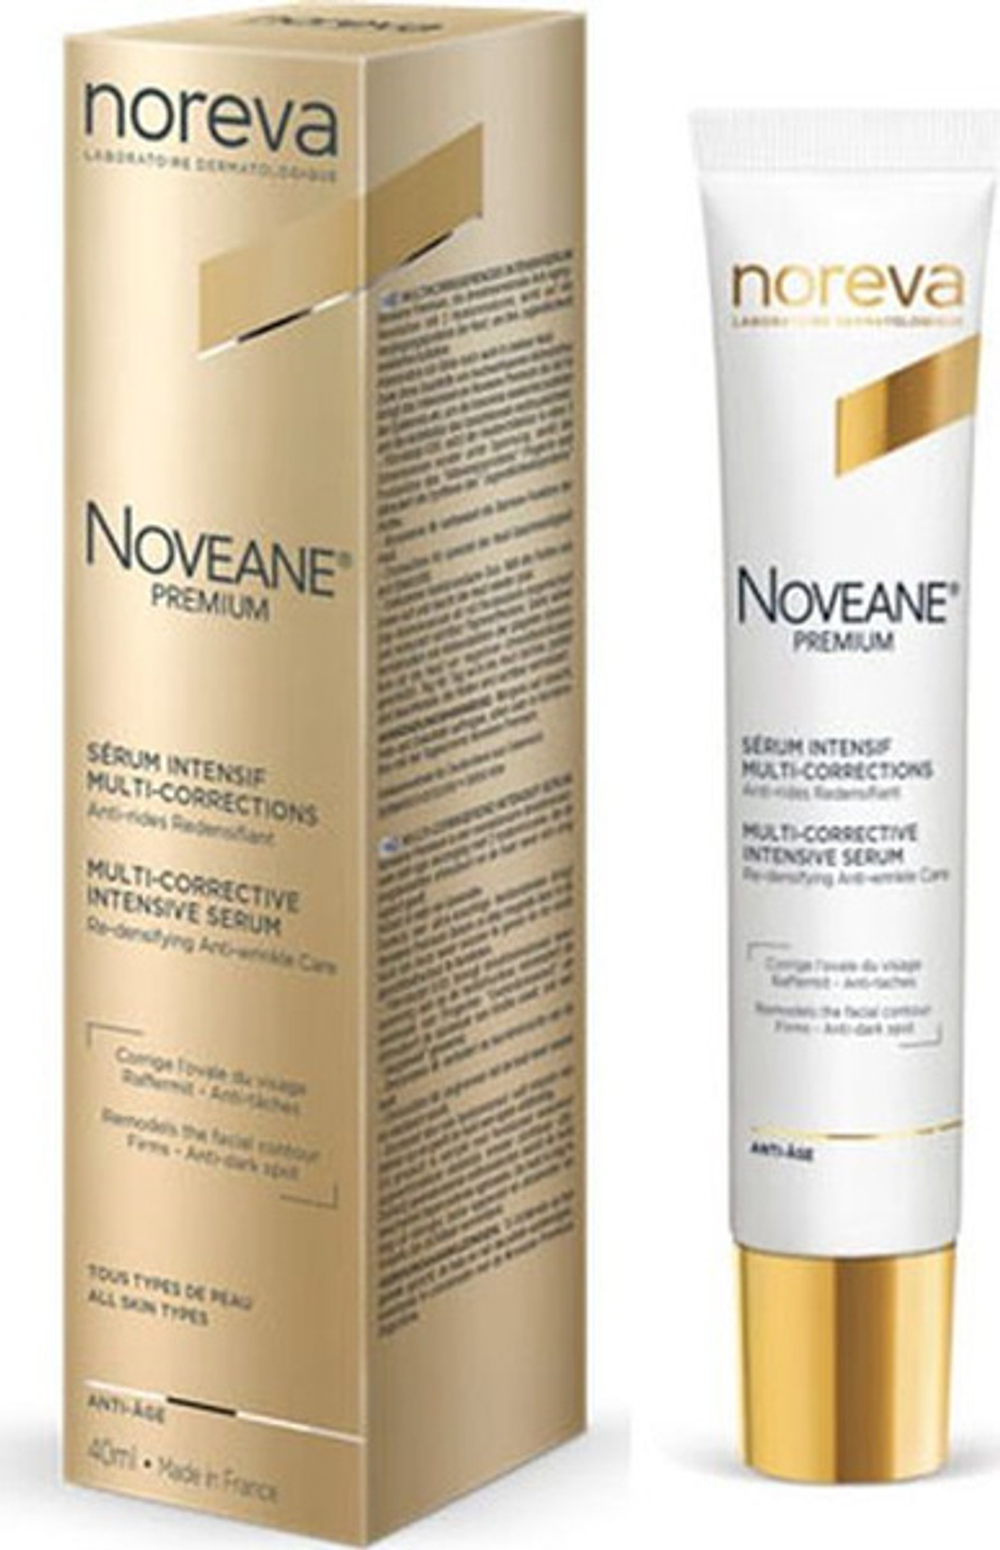 Норева Новеан Премиум Крем дневной мультикорректирующий Noreva Noveane Premium Crème de Jour Multi-Corrections 40 мл